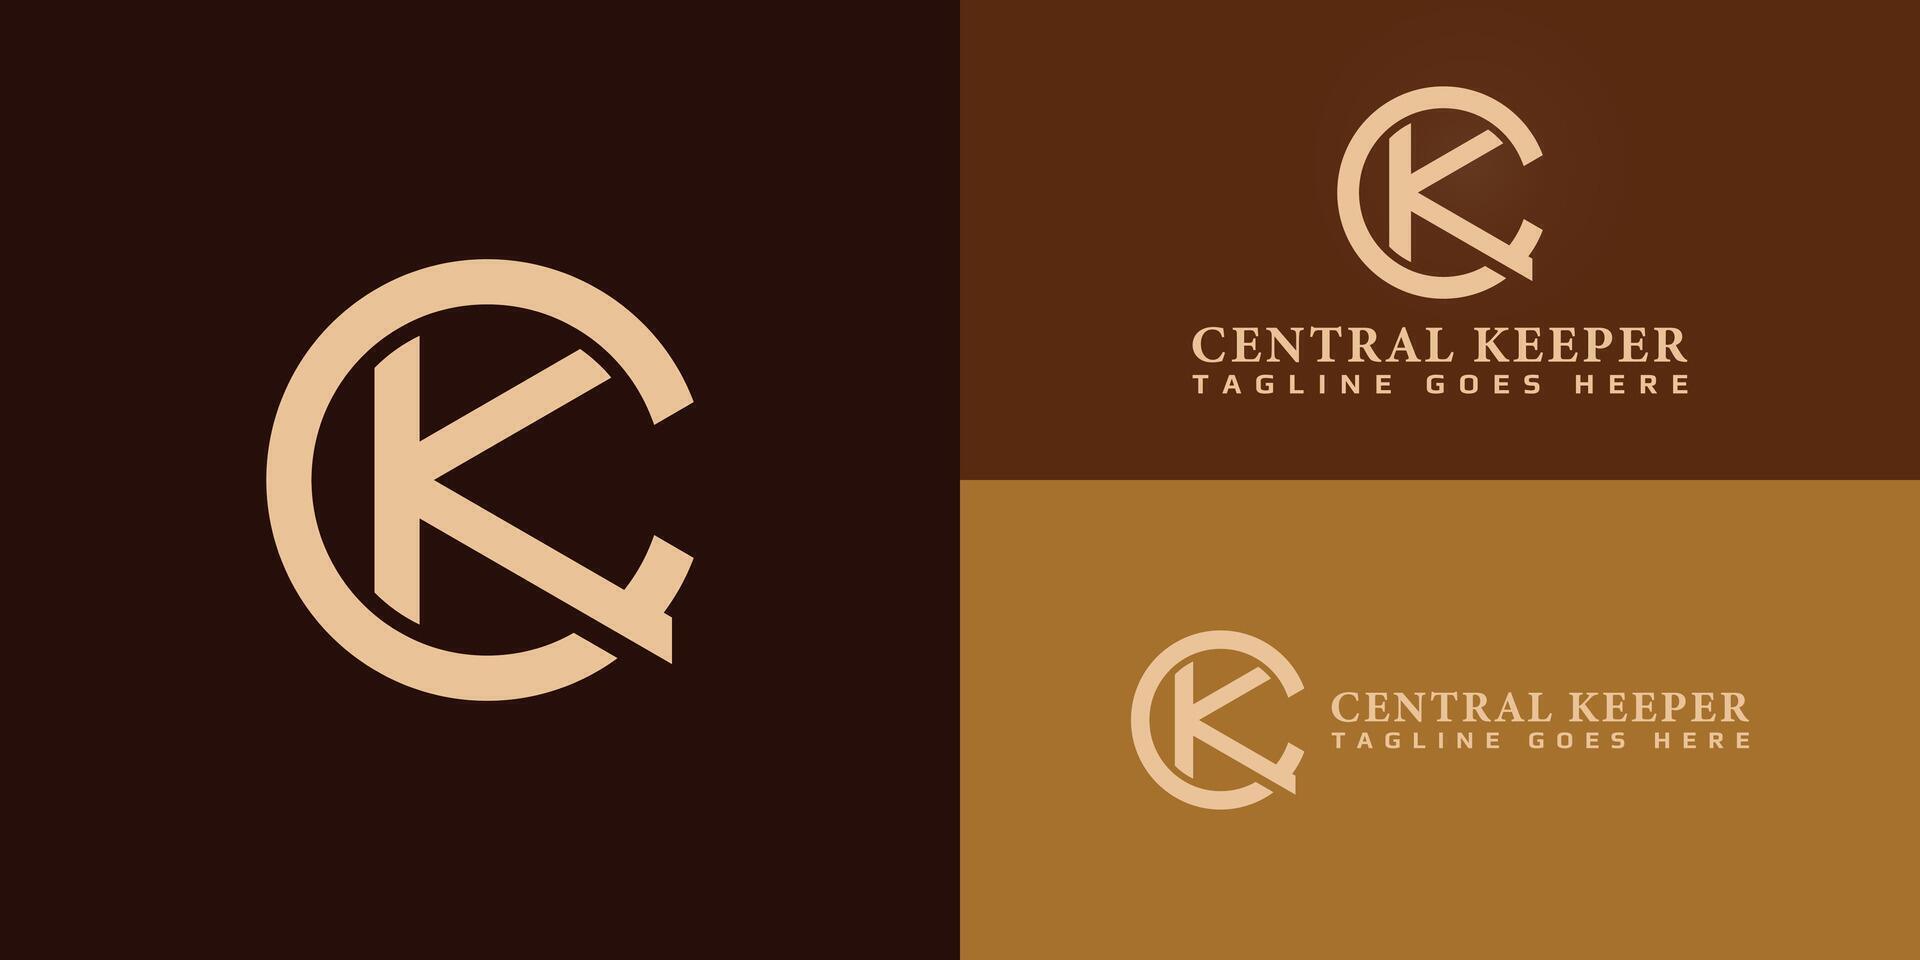 abstrakt Initiale Brief ck oder kc Logo im Gold Farbe isoliert im mehrere braun Hintergründe angewendet zum Boutique Gesetz Feste Logo ebenfalls geeignet zum das Marken oder Unternehmen haben Initiale Name kc oder ck vektor